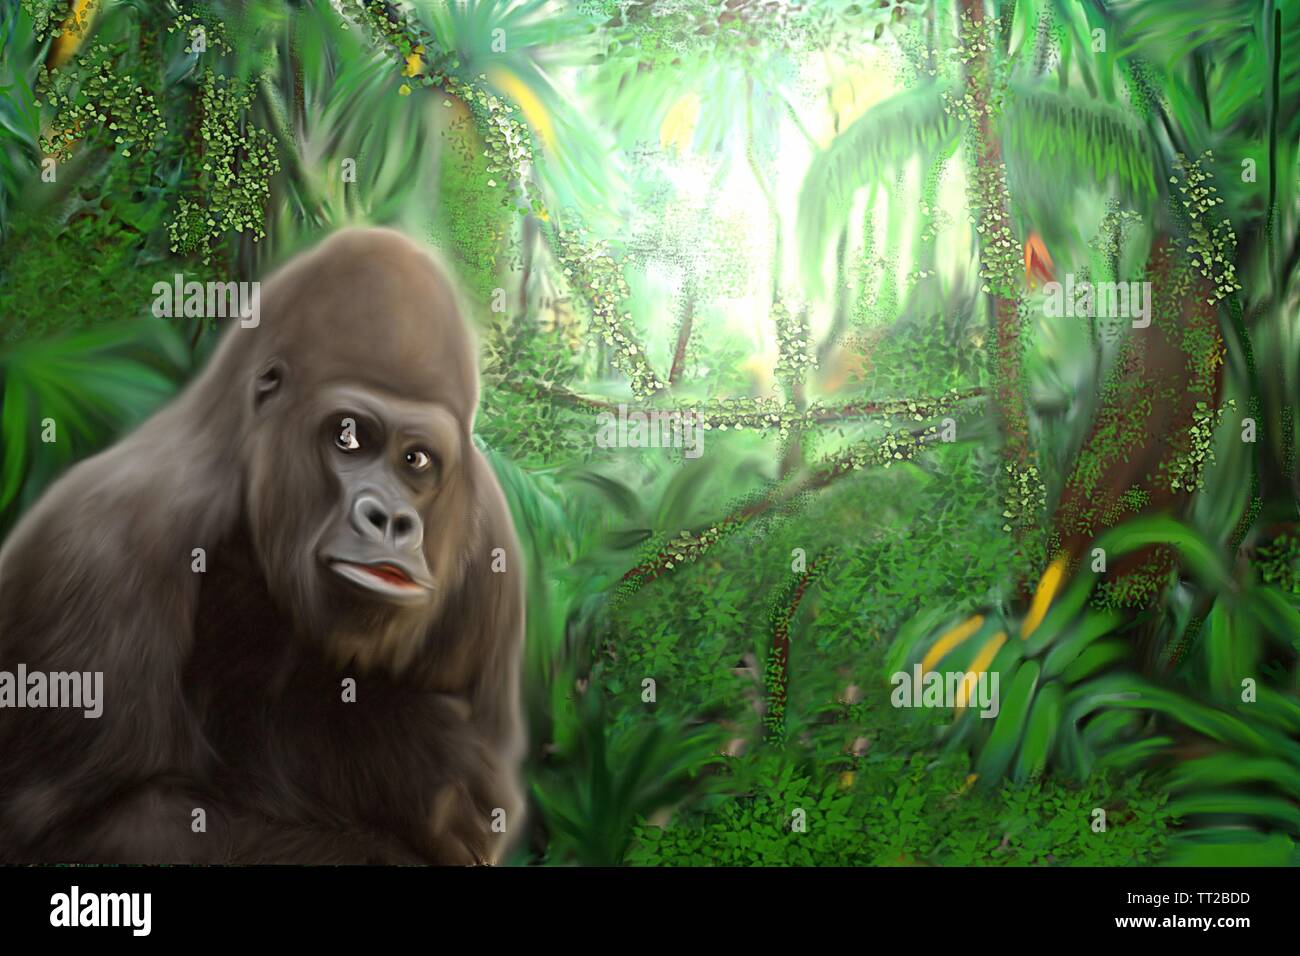 Gorilla nella giungla - pittura artistica di un gorilla in una giungla tropicale. Foto Stock